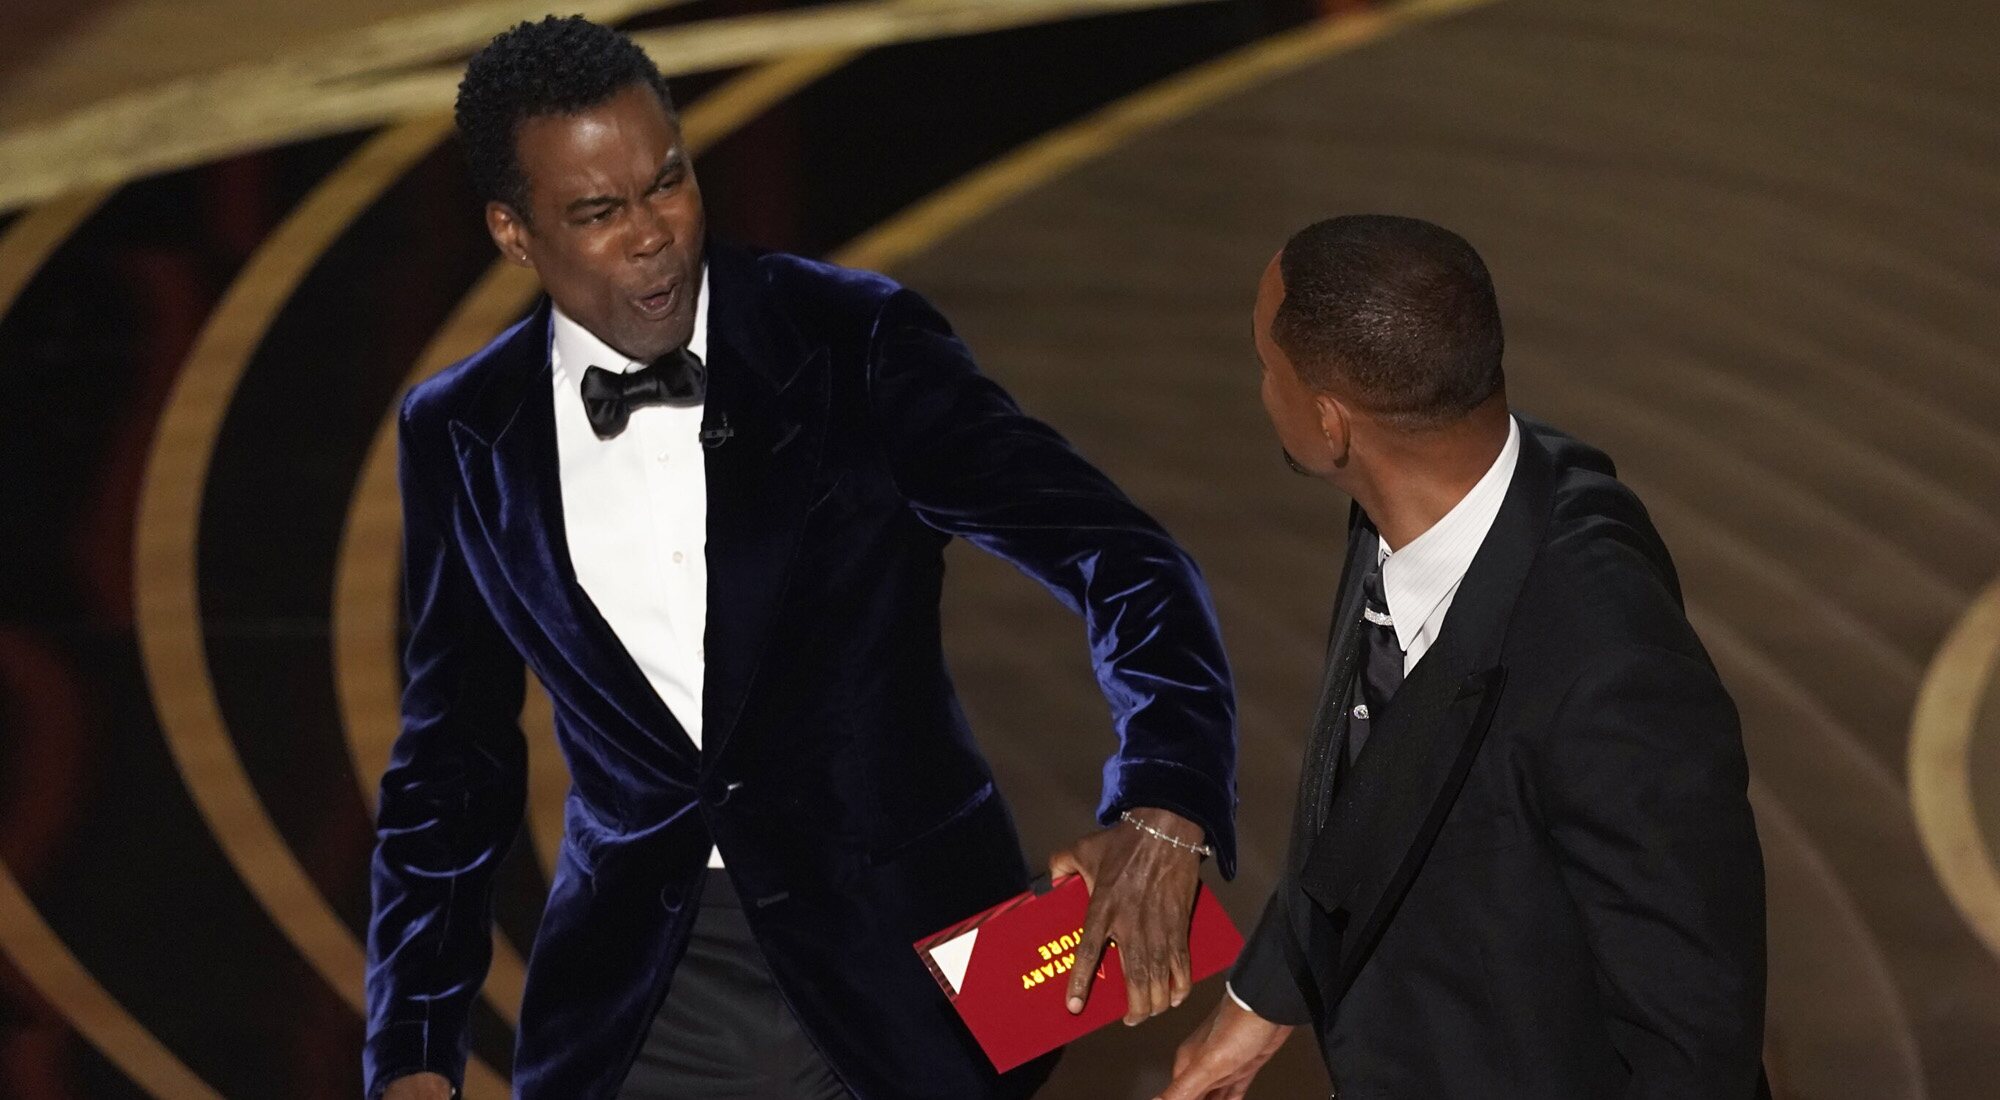 Chris Rock, totalmente anonadado tras recibir una bofetada de Will Smith en los Oscar